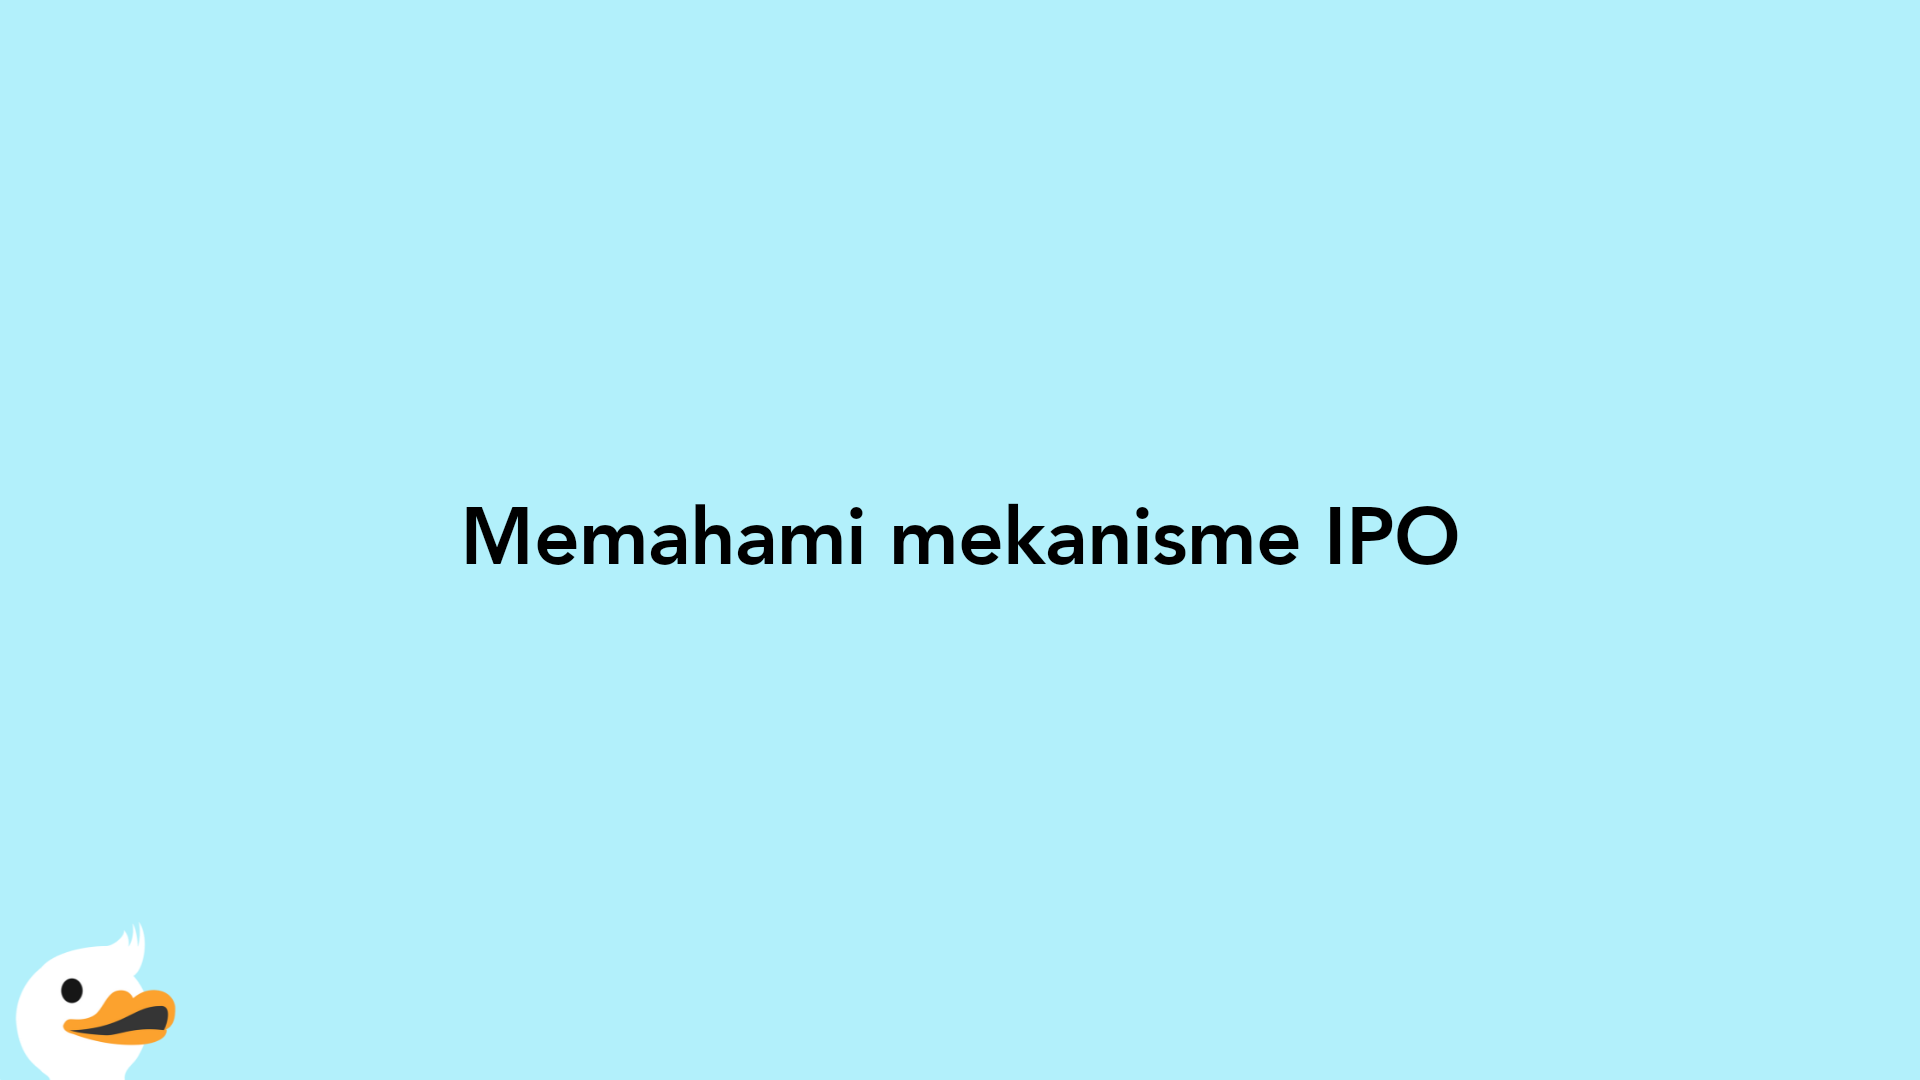 Memahami mekanisme IPO